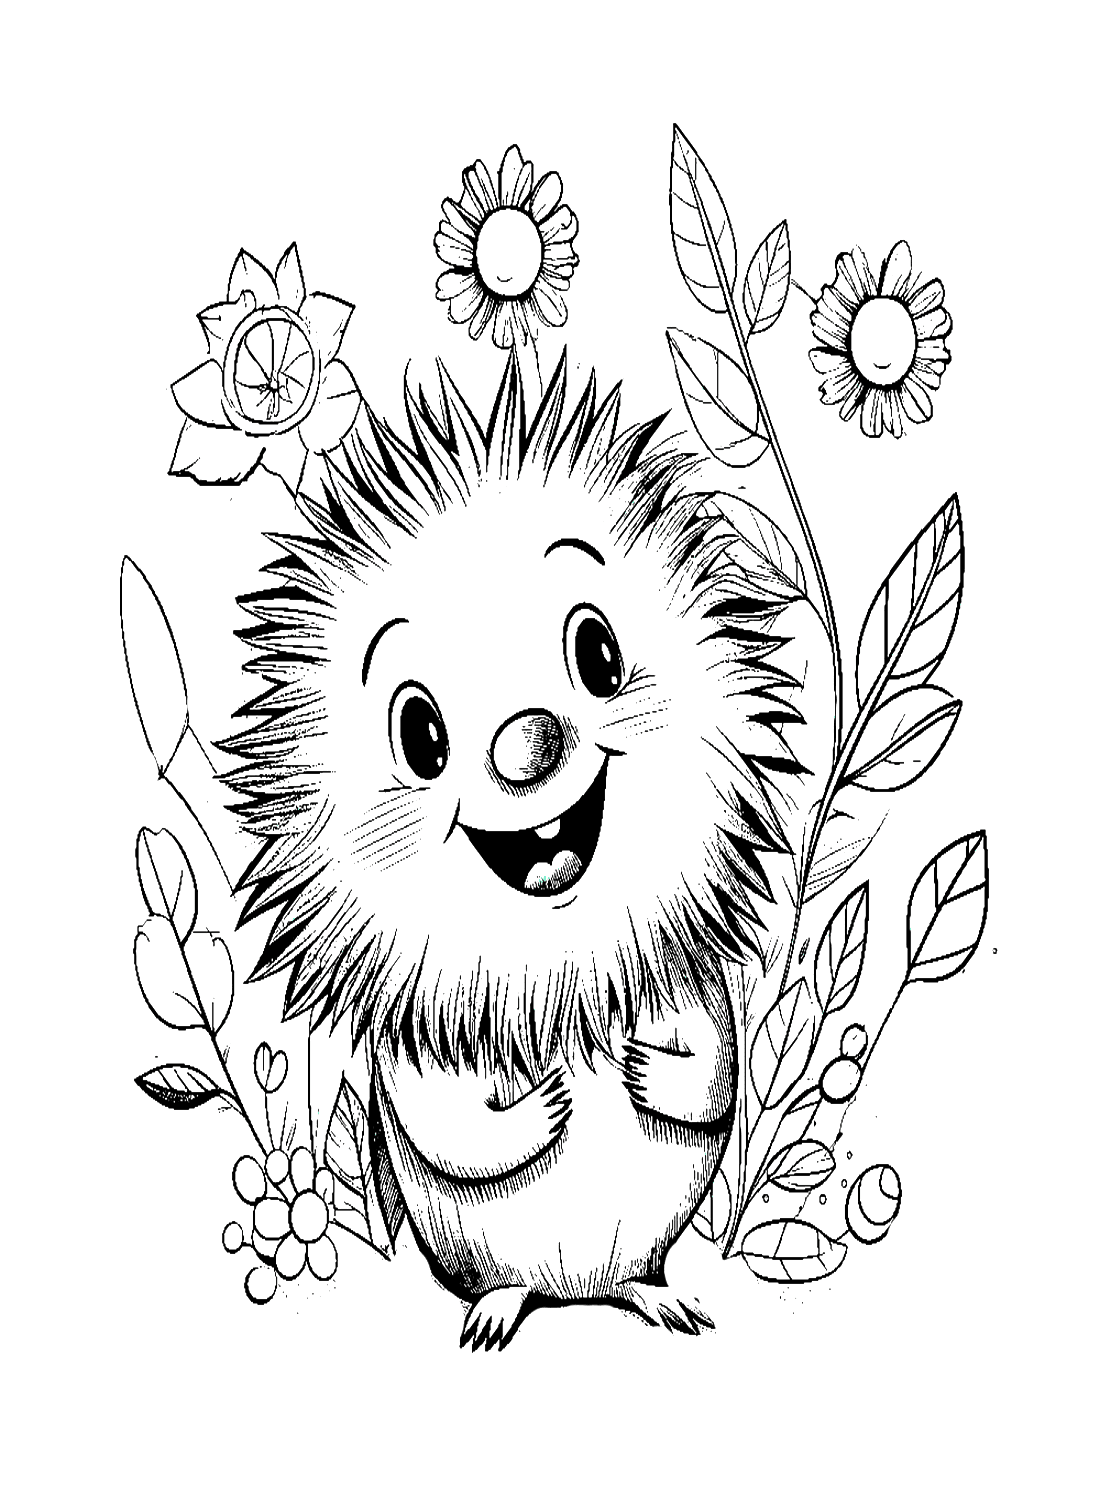 Página para colorir de porco-espinho feliz de Porcupine